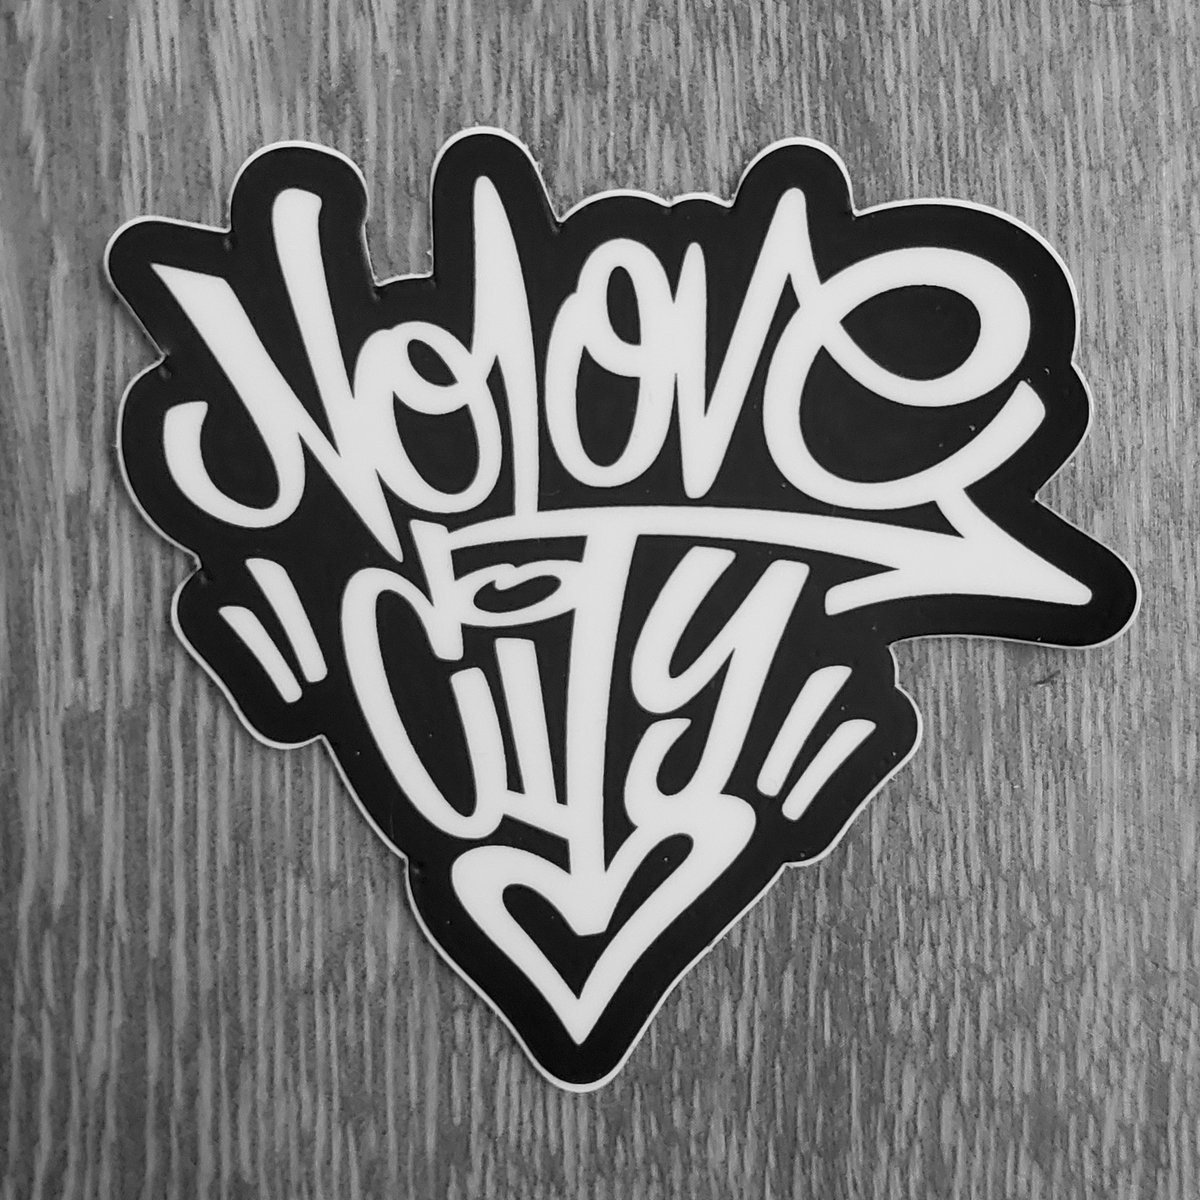 Graffiti Style | Sticker